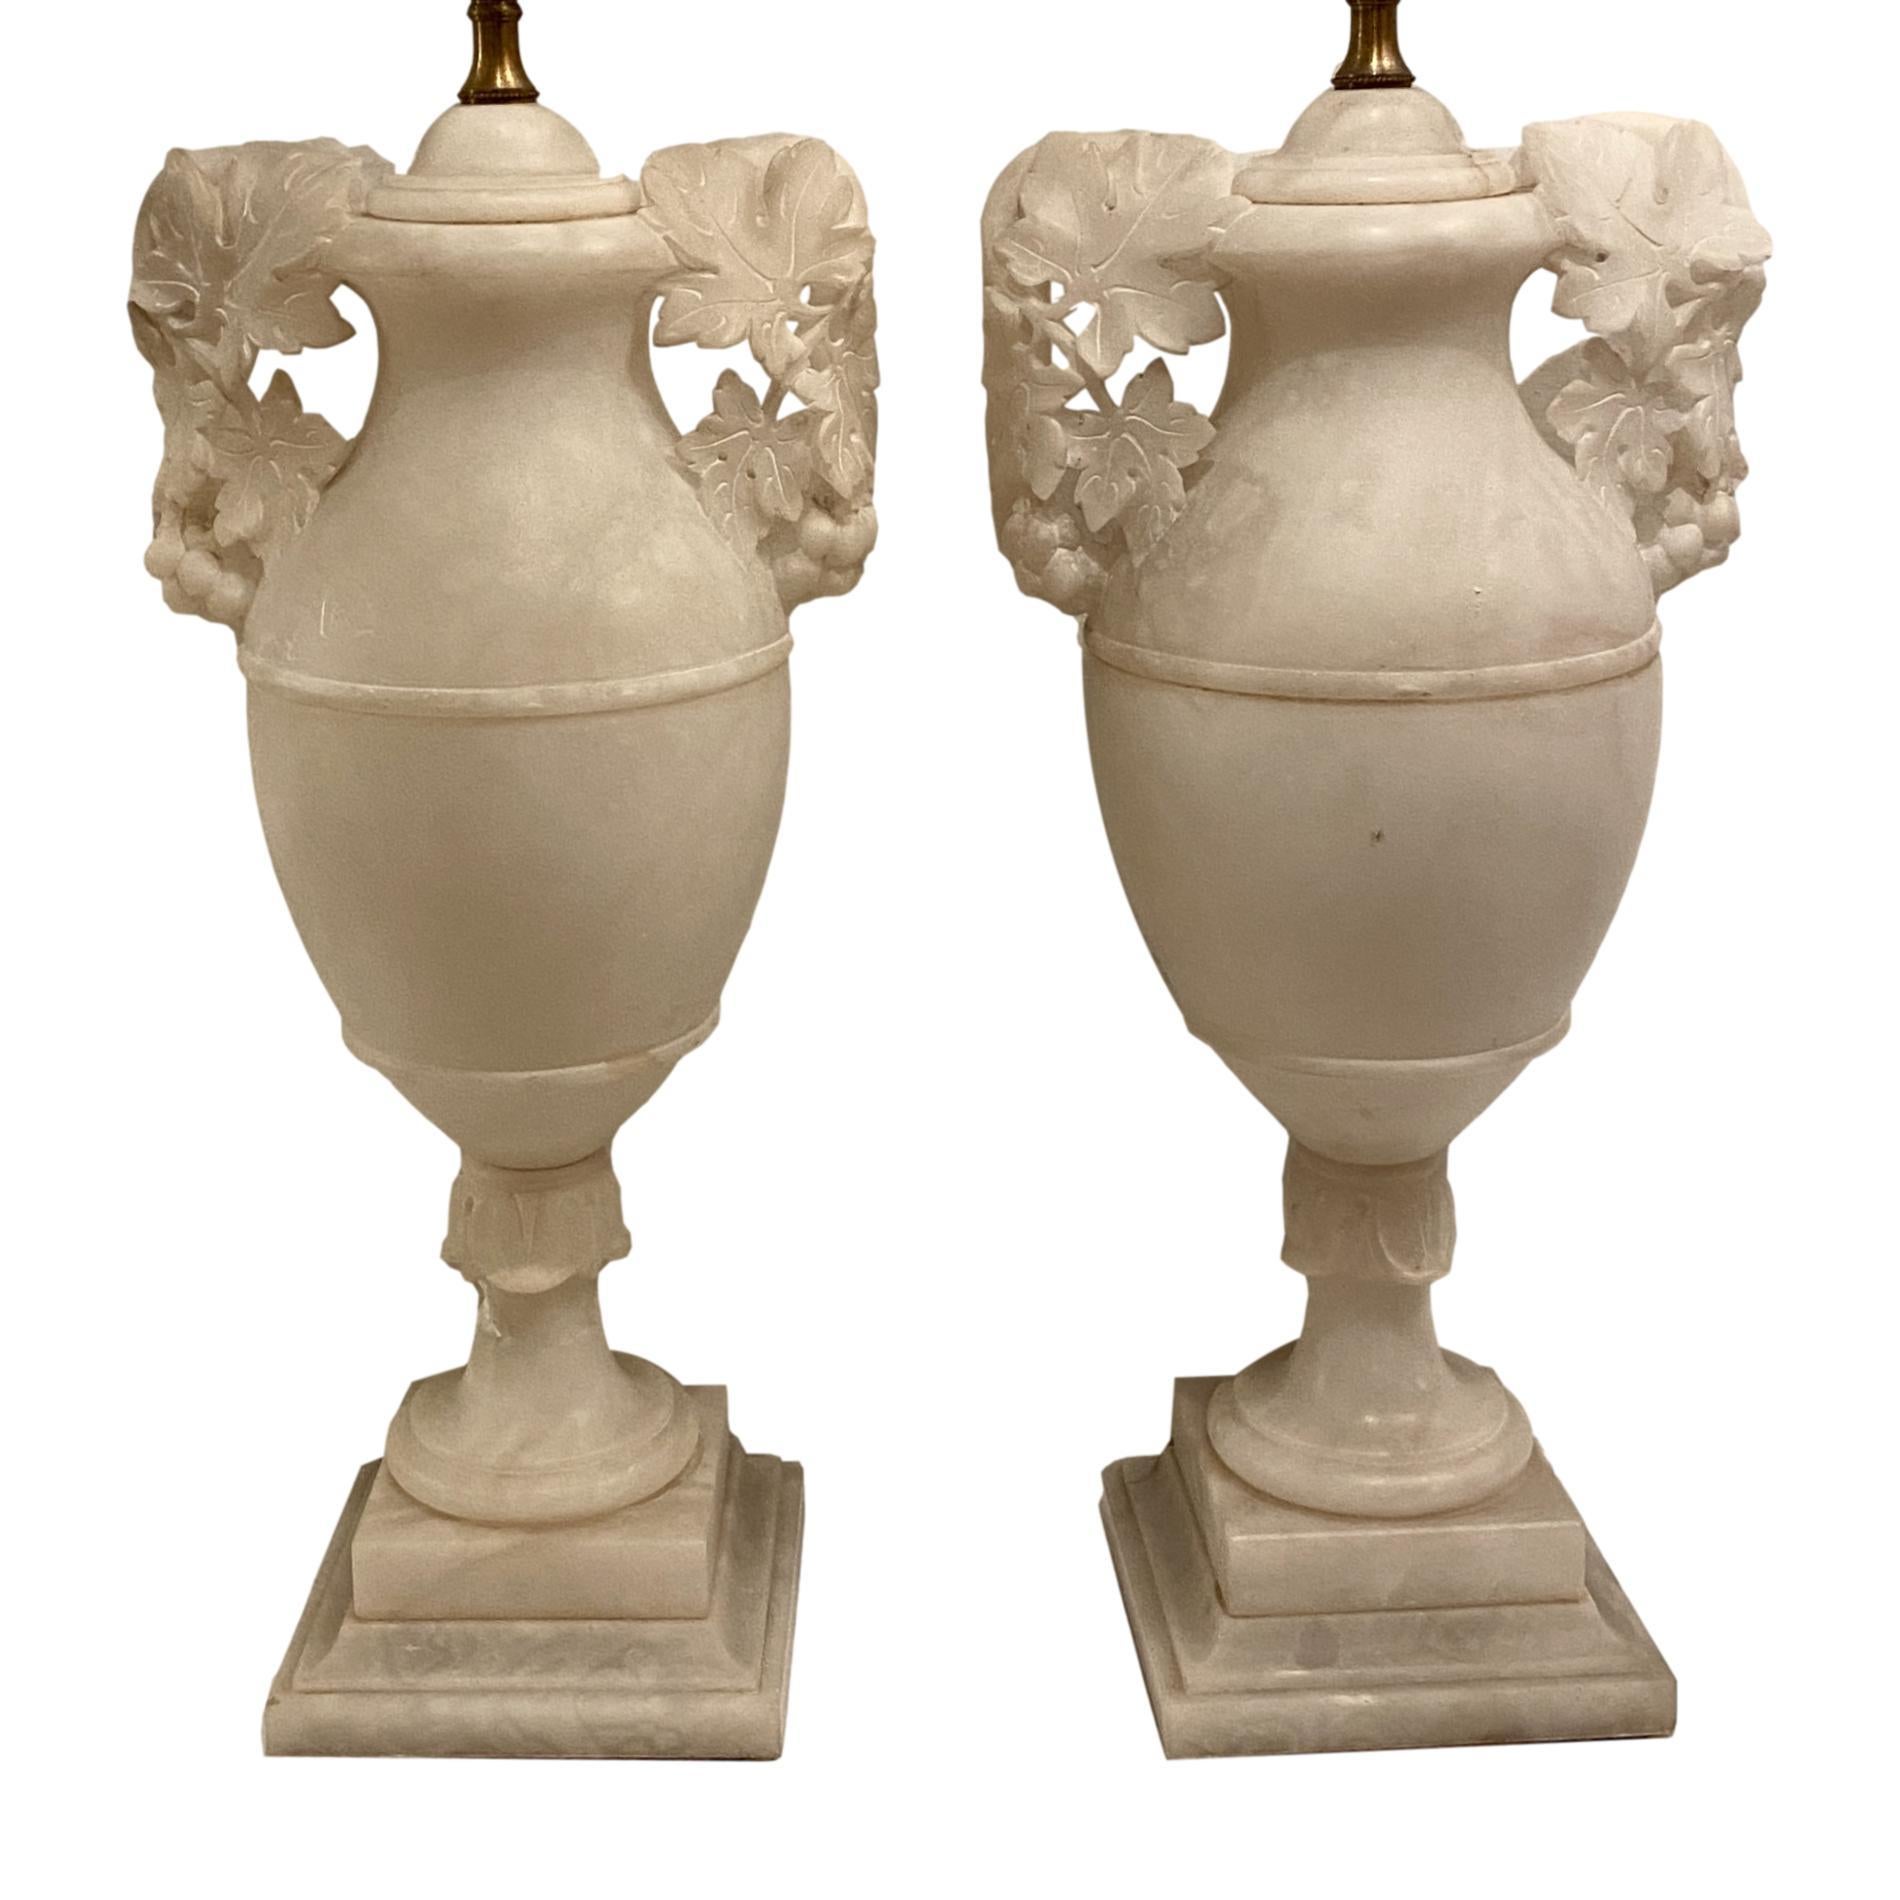 Paire de lampes de table en albâtre sculpté, datant des années 1920, avec des poignées ajourées à motif de feuillage.

Mesures :
Hauteur du corps : 18